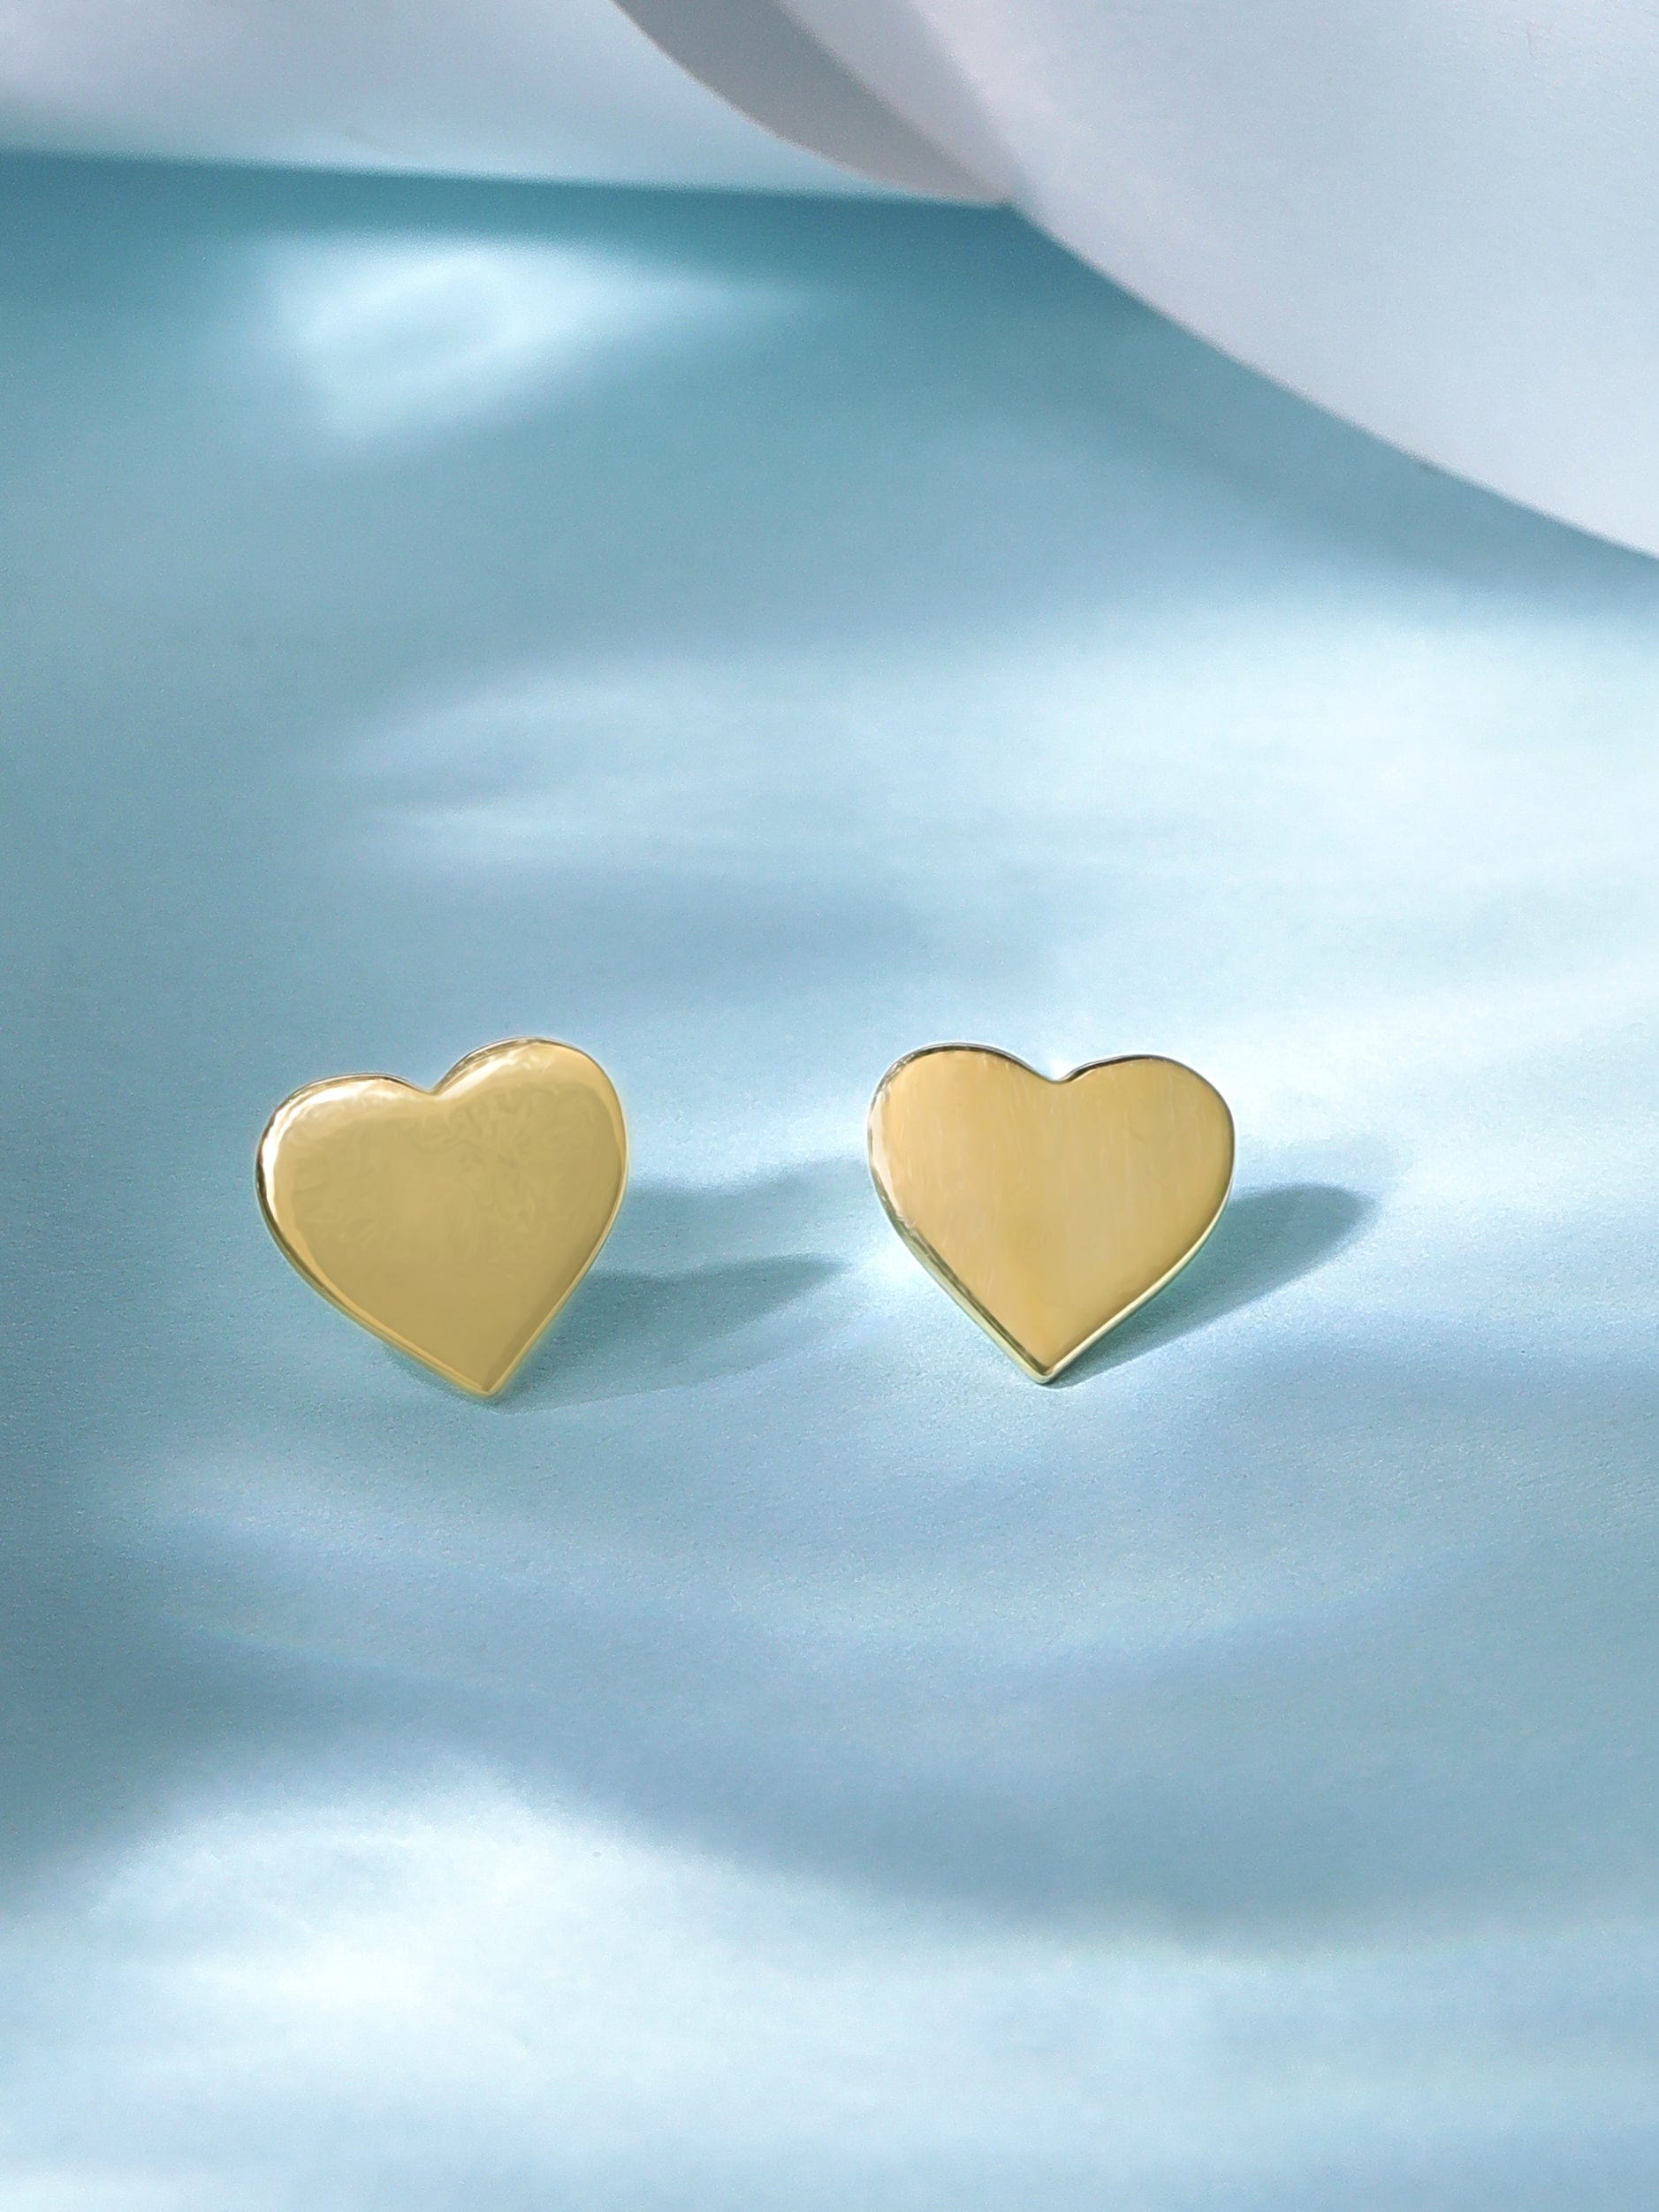 Rubans 925 Silver, 18K Gold Plated Heart Motif Stud Earrings. Earrings